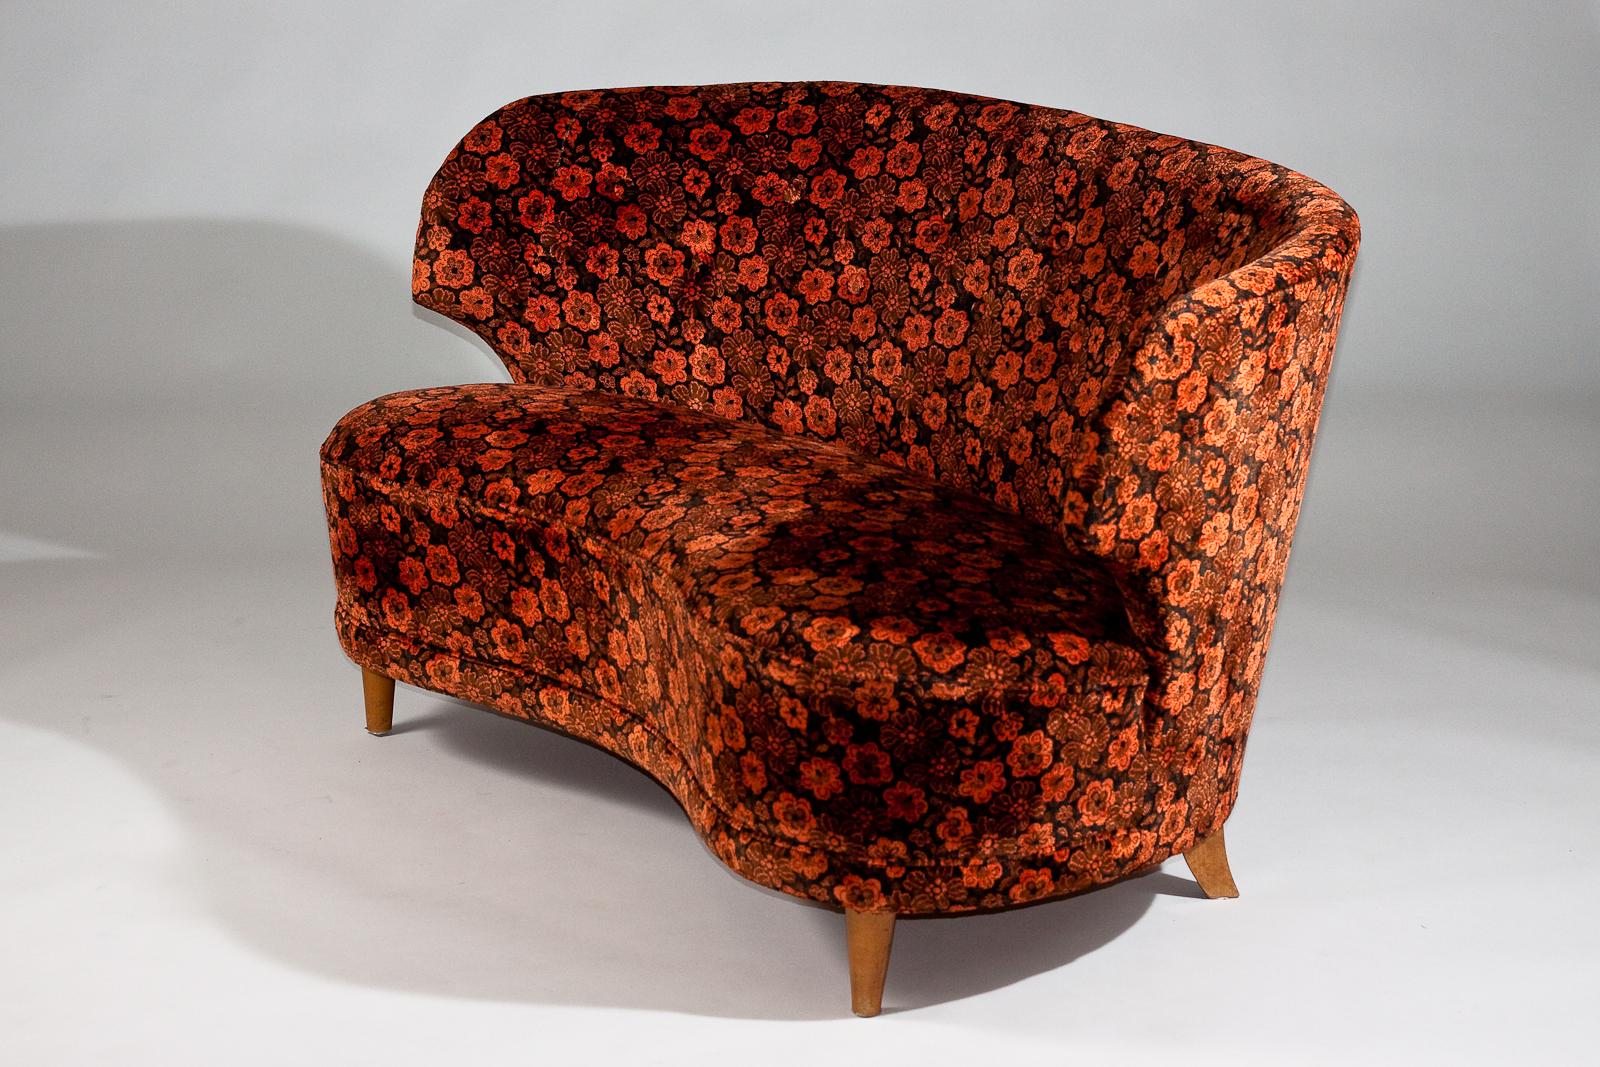 Voici le canapé incurvé Carl-Johan Boman des années 1940, une pièce classique du design moderne scandinave de la prestigieuse maison Boman Oy. Ce canapé vintage porte la signature de qualité du mobilier de Vintage By, avec ses lignes épurées, ses